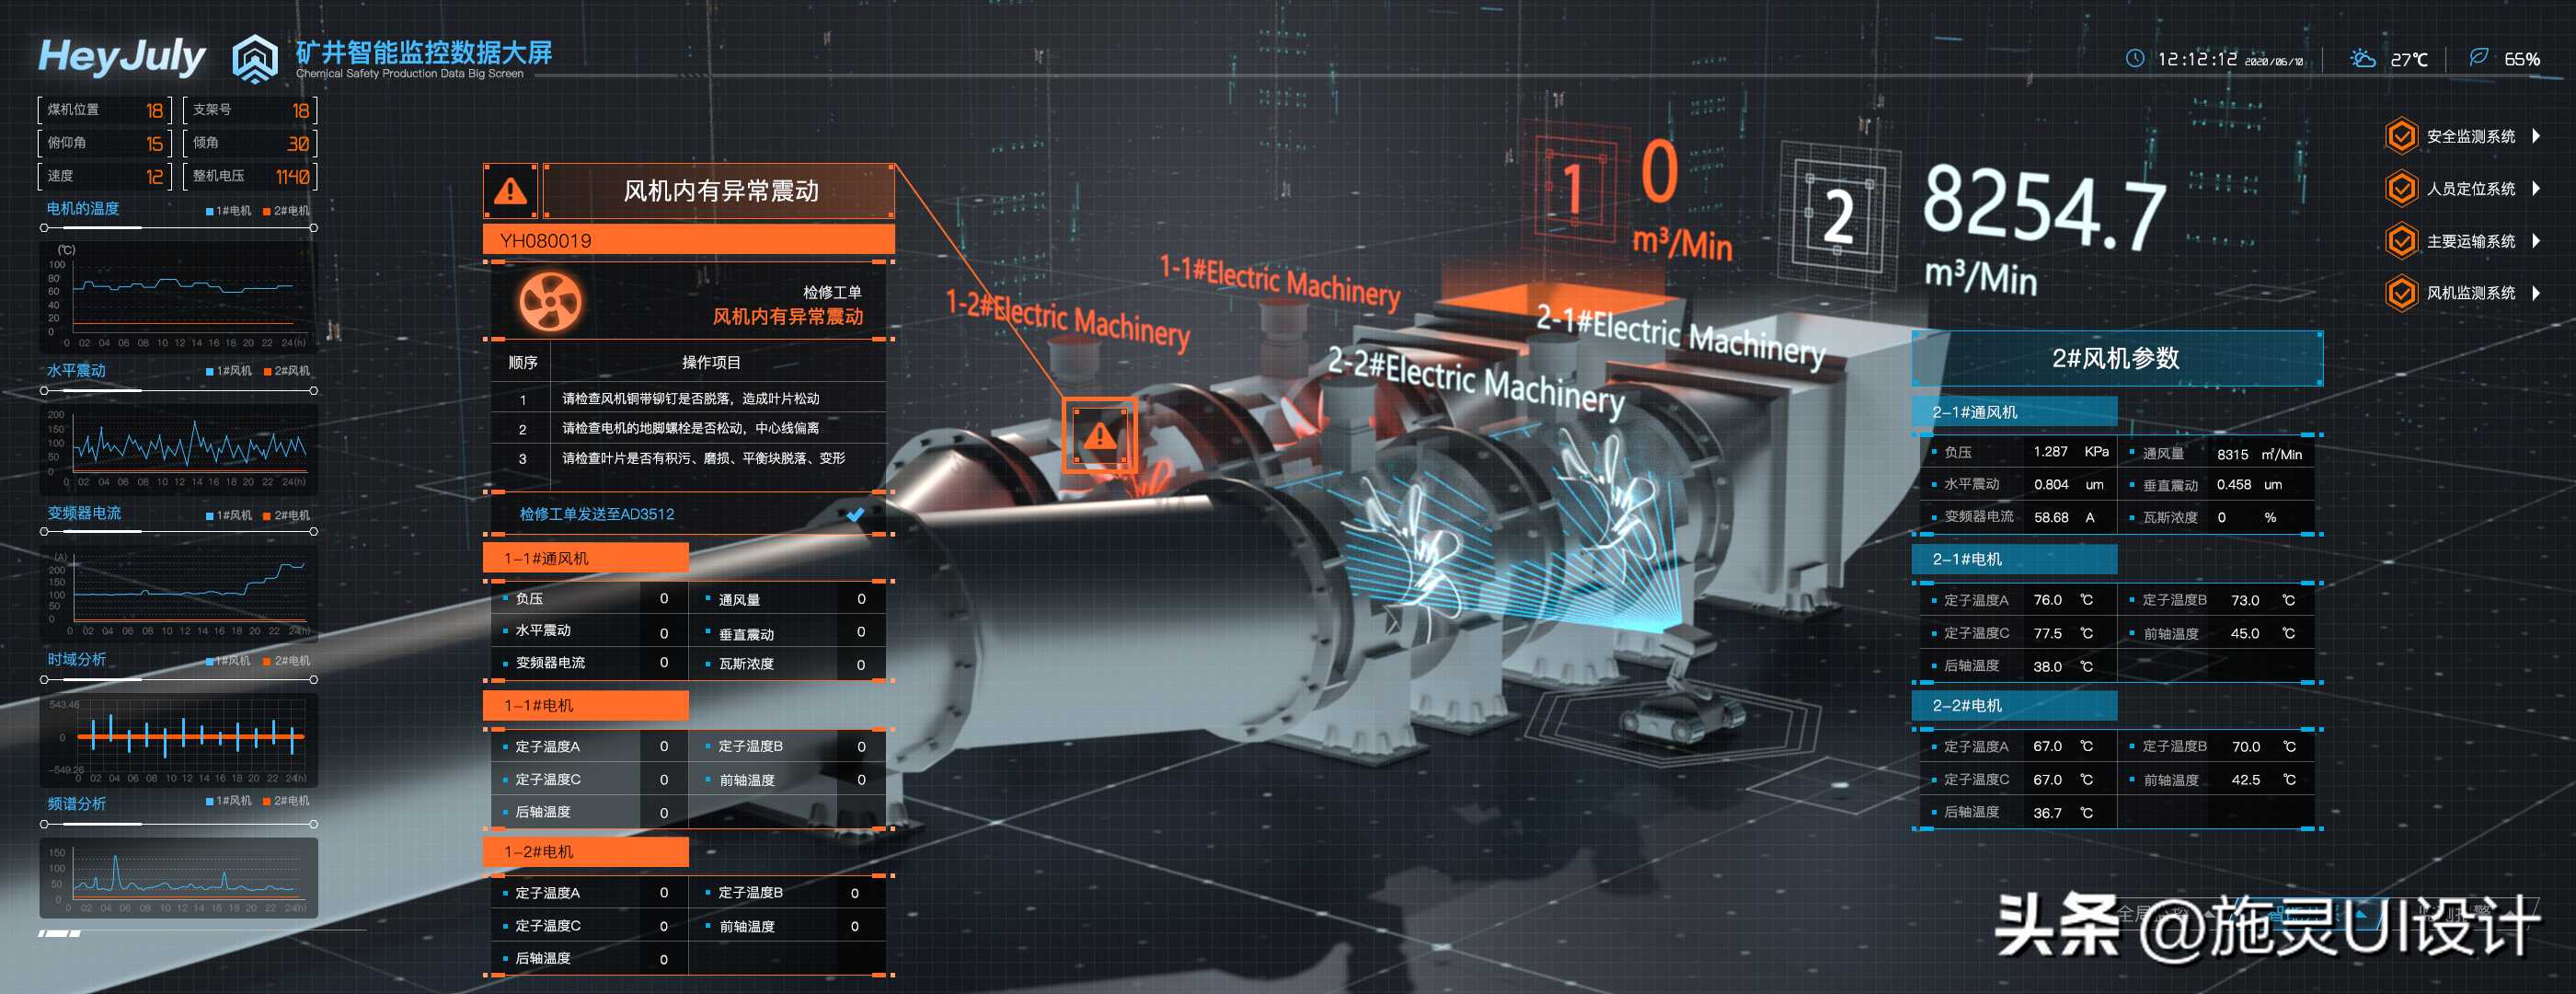 用Unity 3d开发的设备展示大屏案例，虚拟现实技术助力设备展示